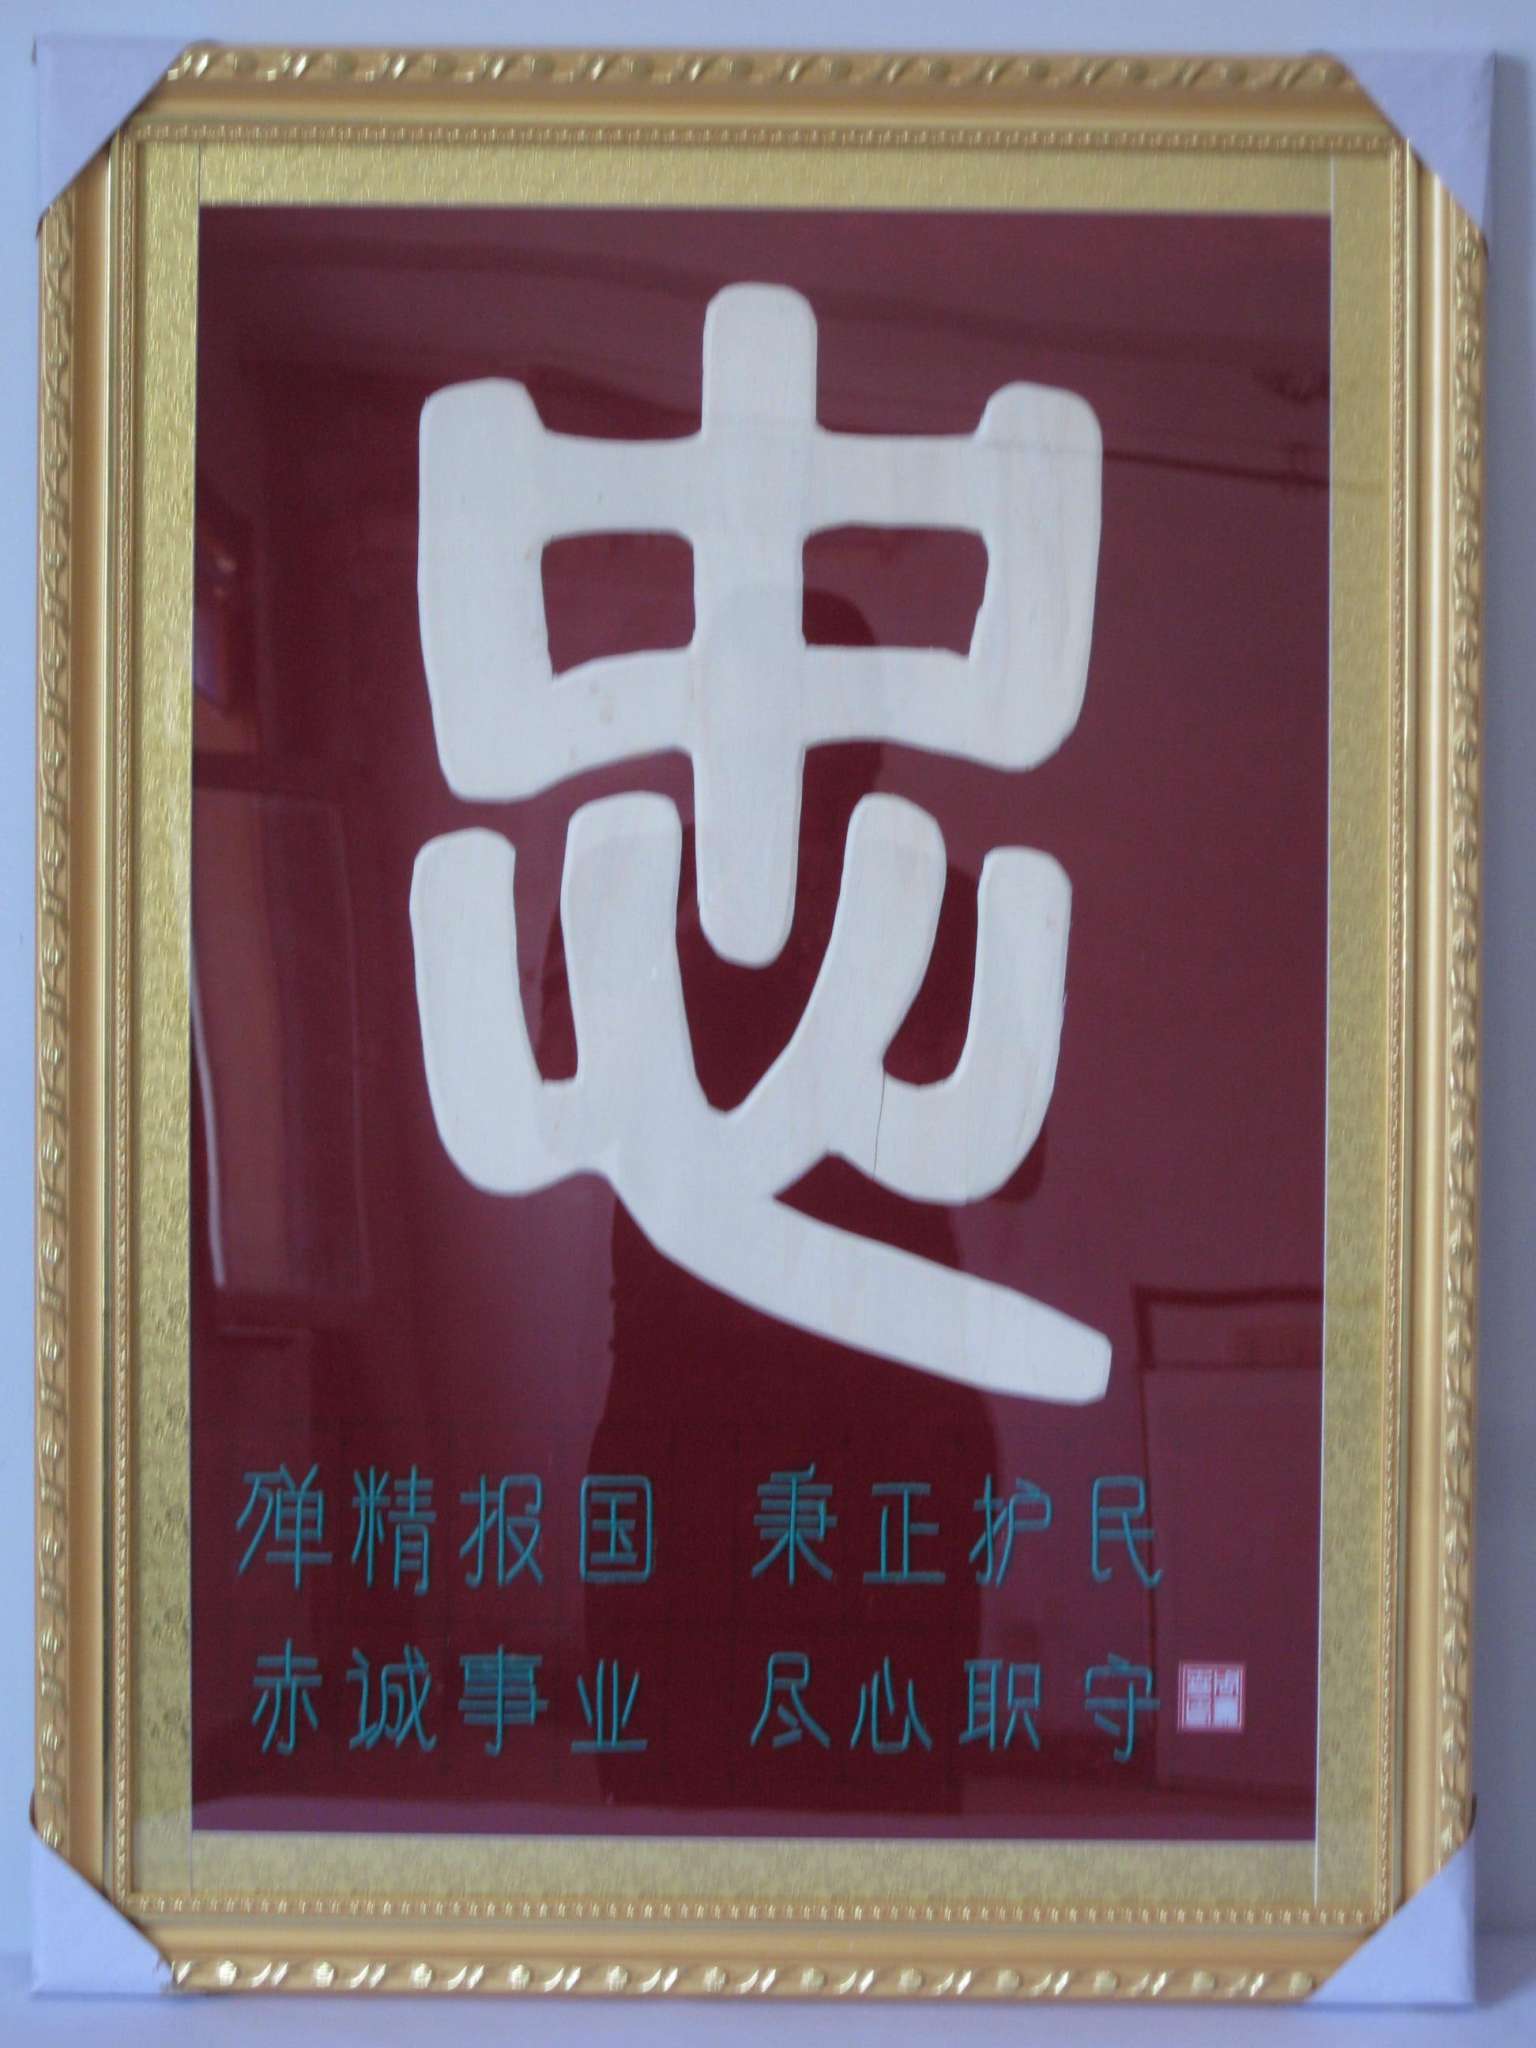 乾安县工艺美术协会图片